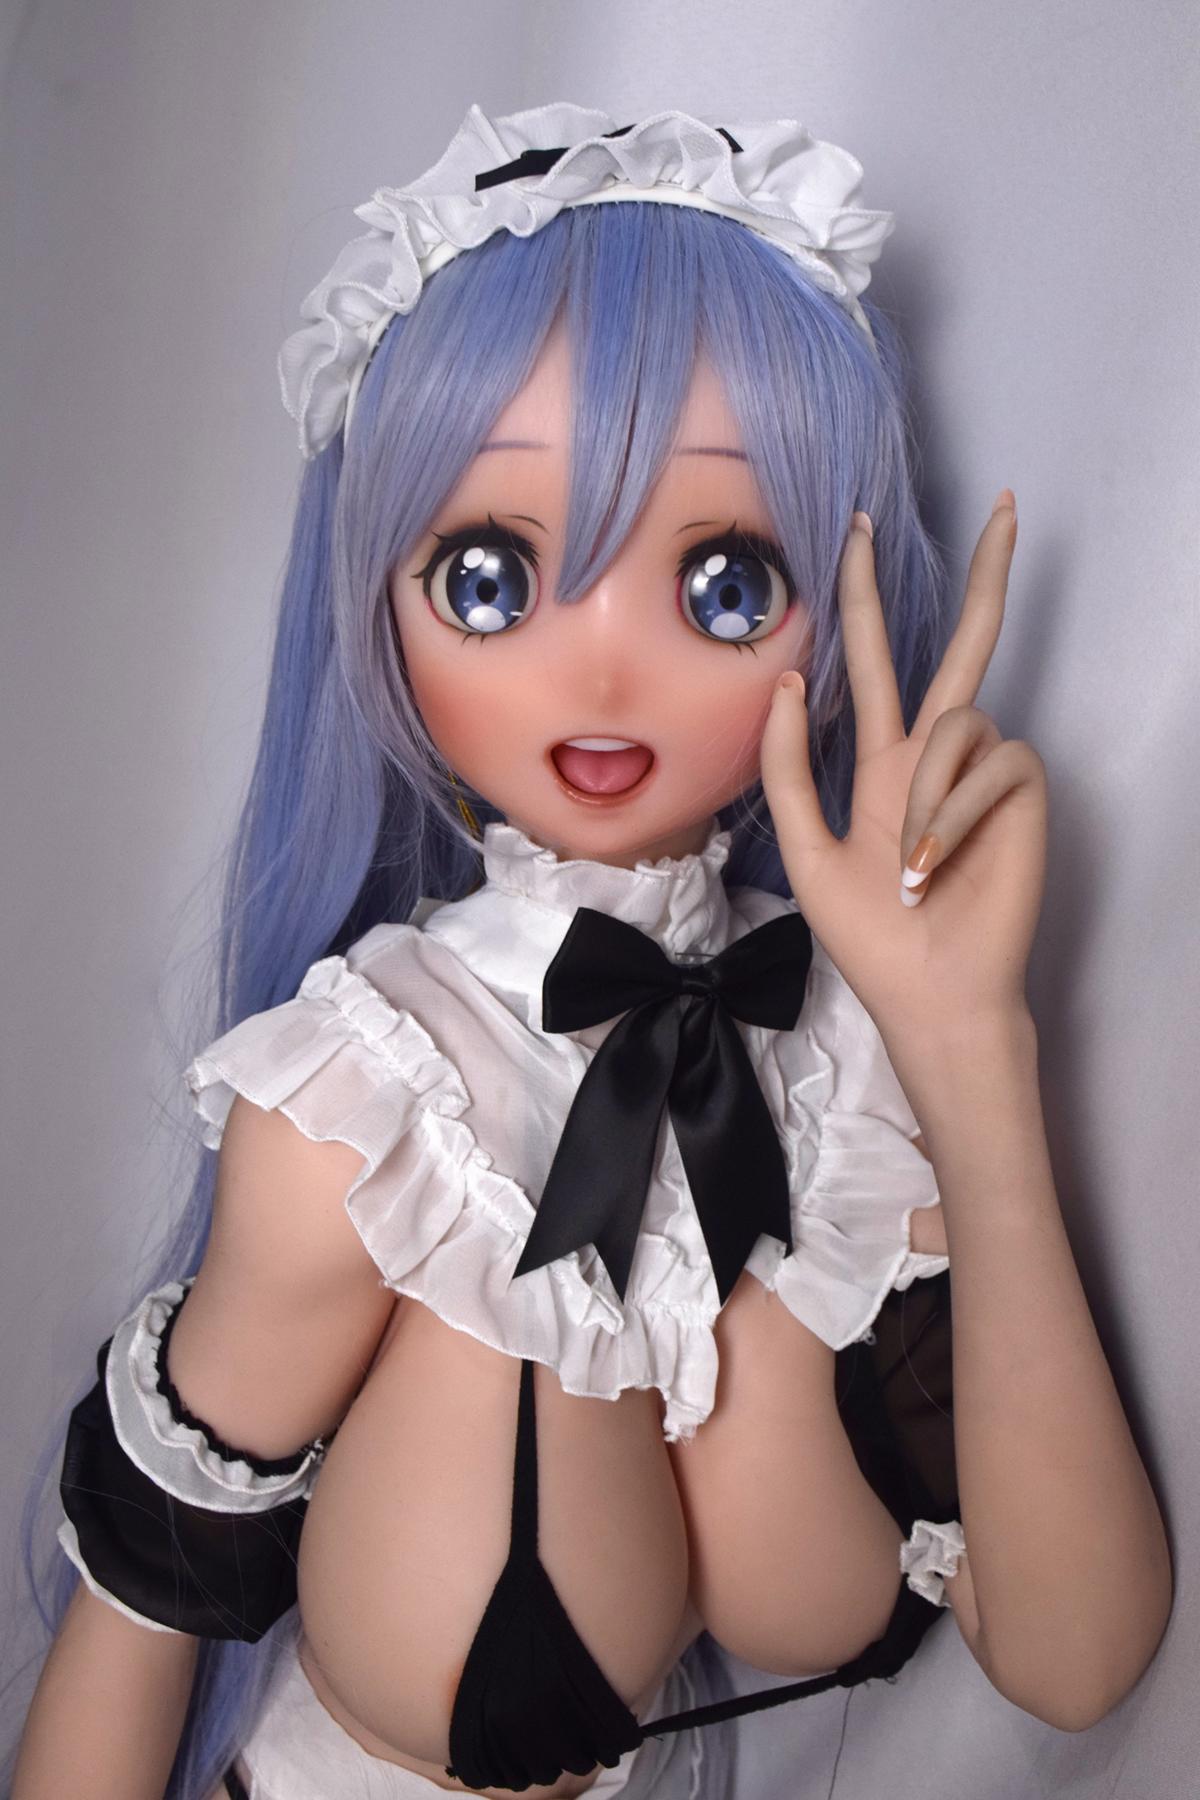 Manga Silikonsexpuppe Merkur | Anime Real Doll